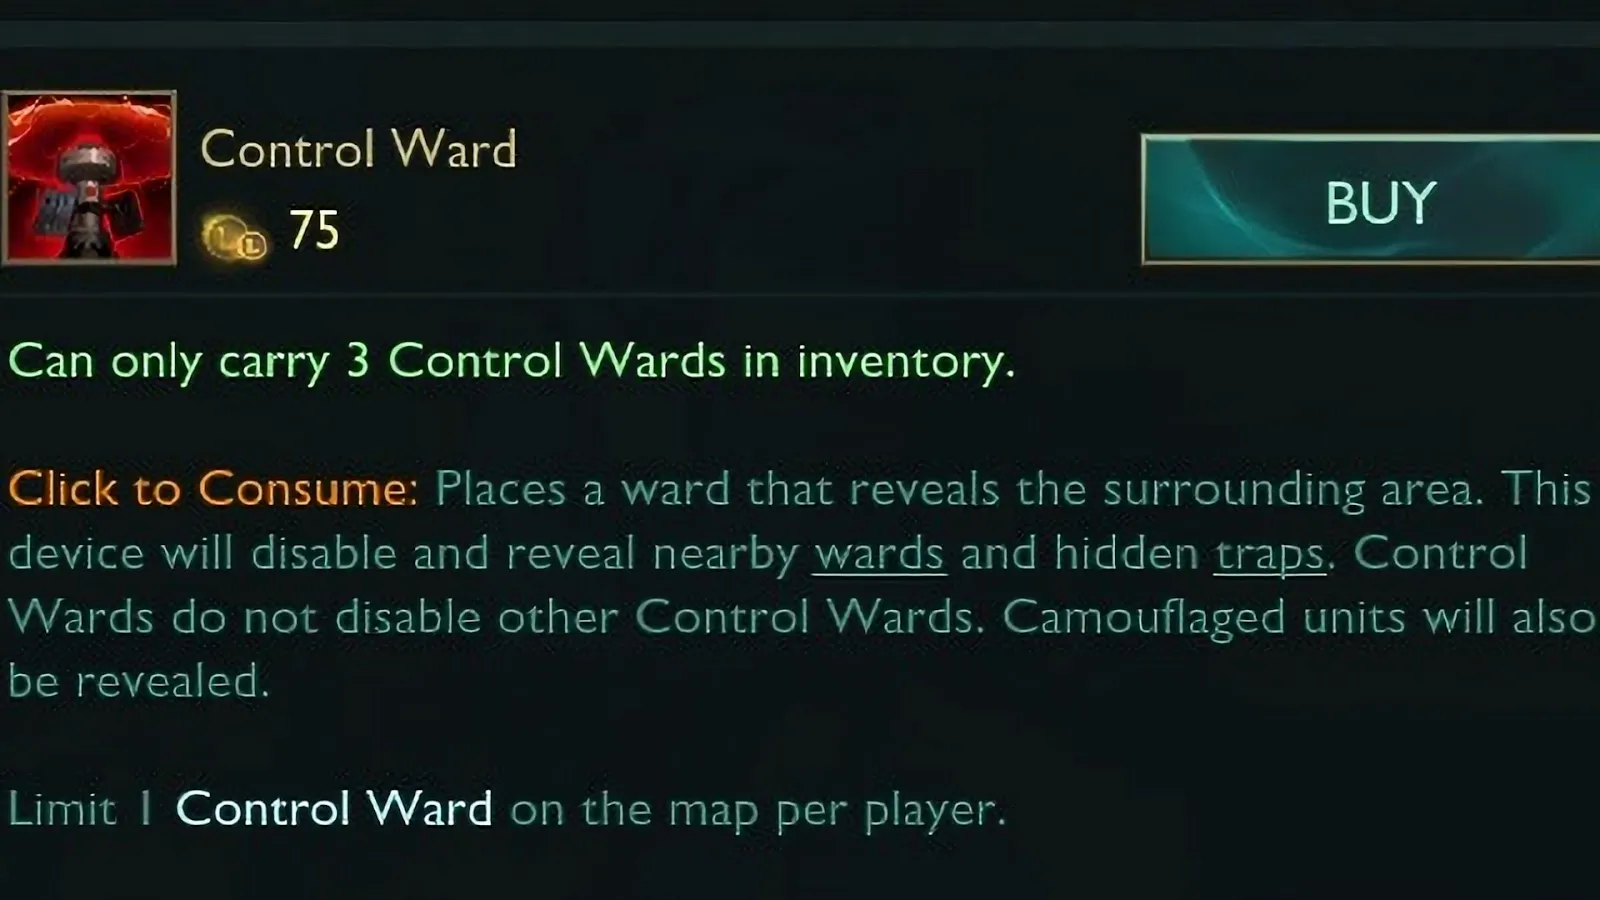 League of Legends - Control Ward description